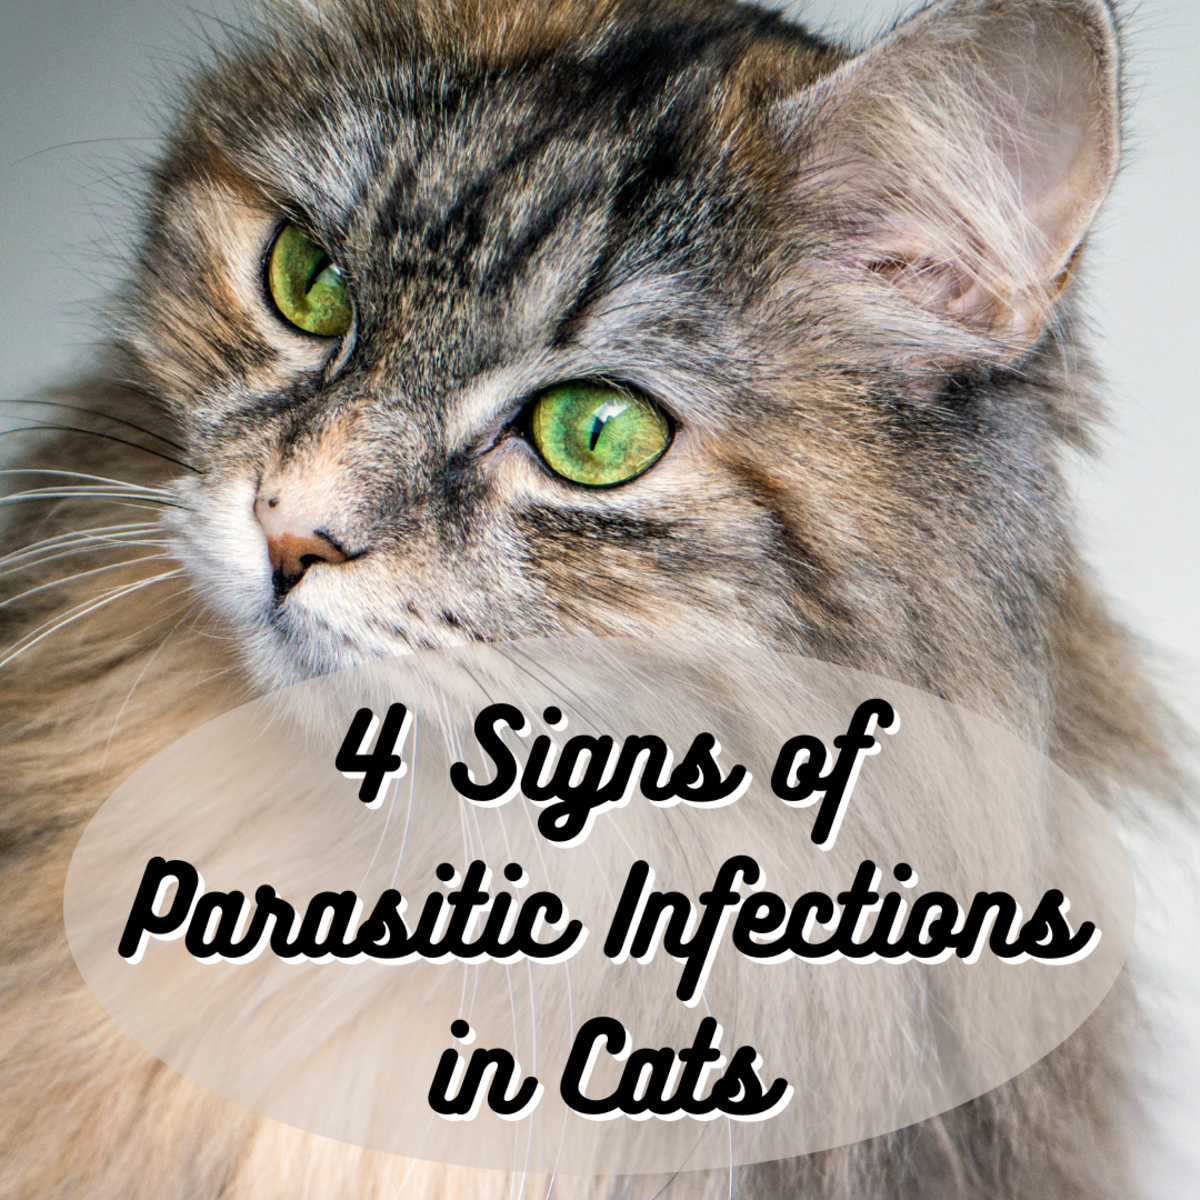 猫咪被寄生虫感染的4个迹象